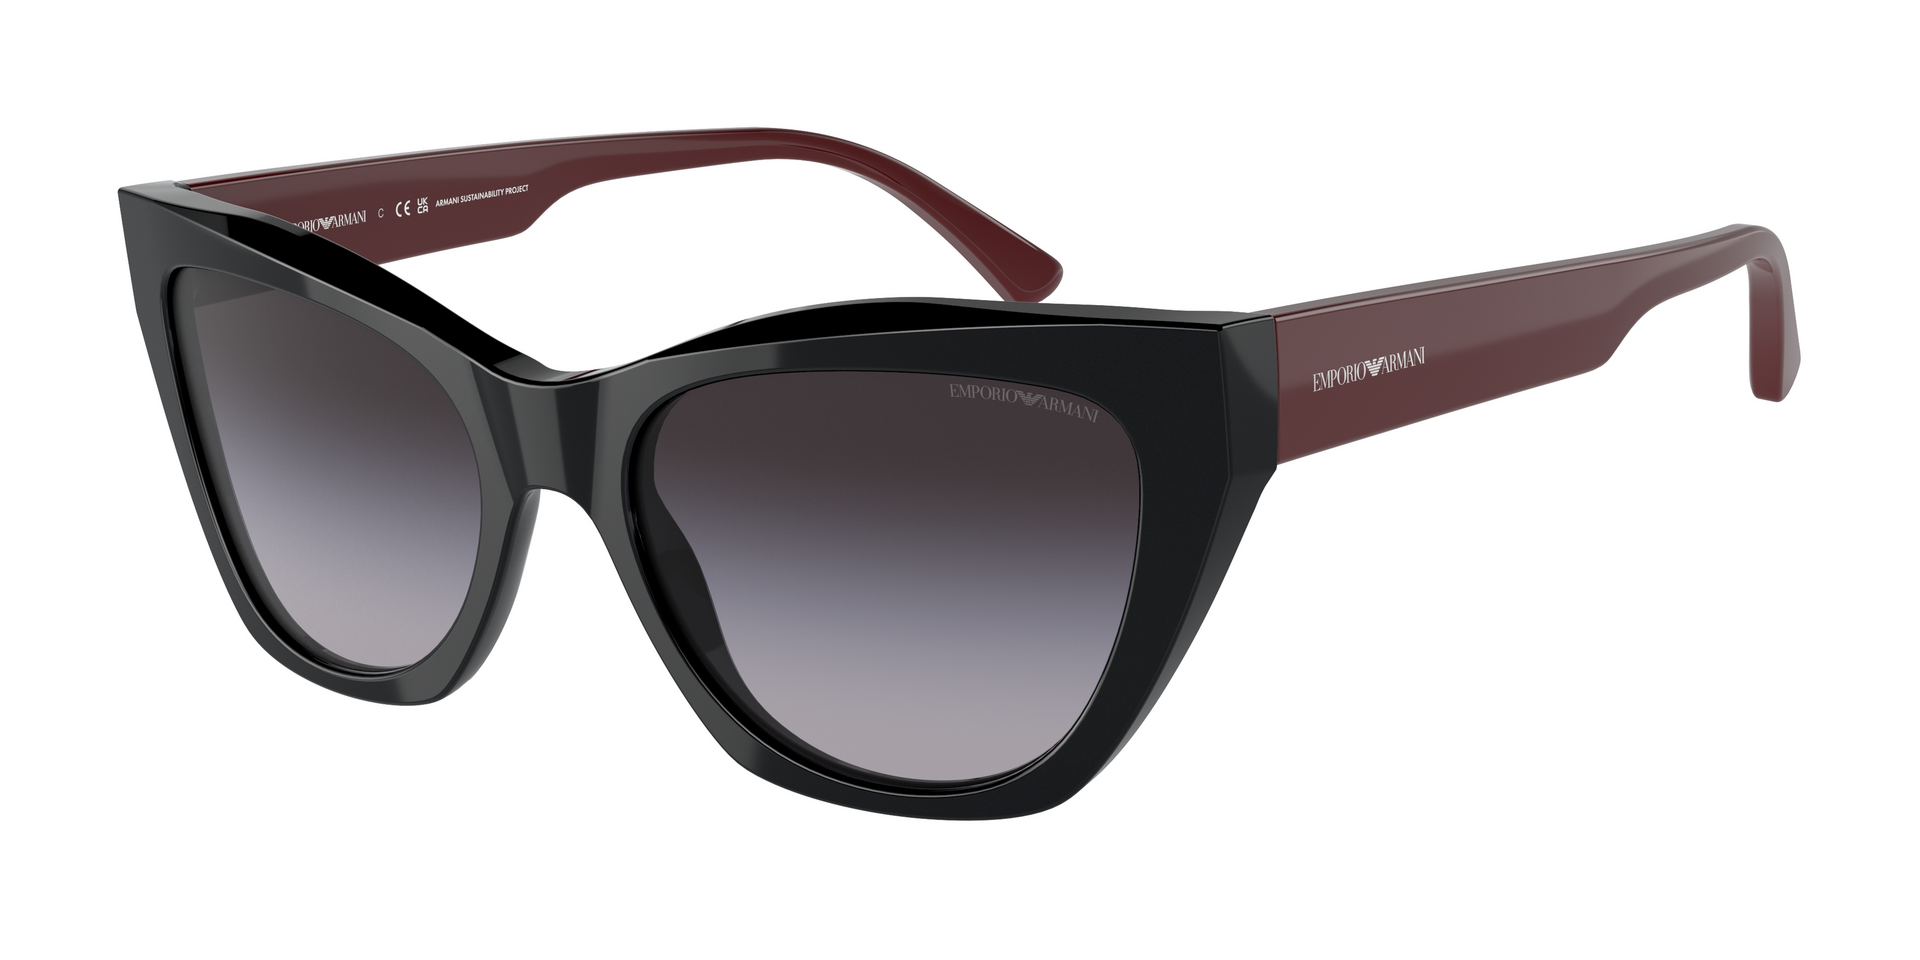 Das Bild zeigt die Sonnenbrille EA4176 50178G von der Marke Emporio Armani in schwarz.